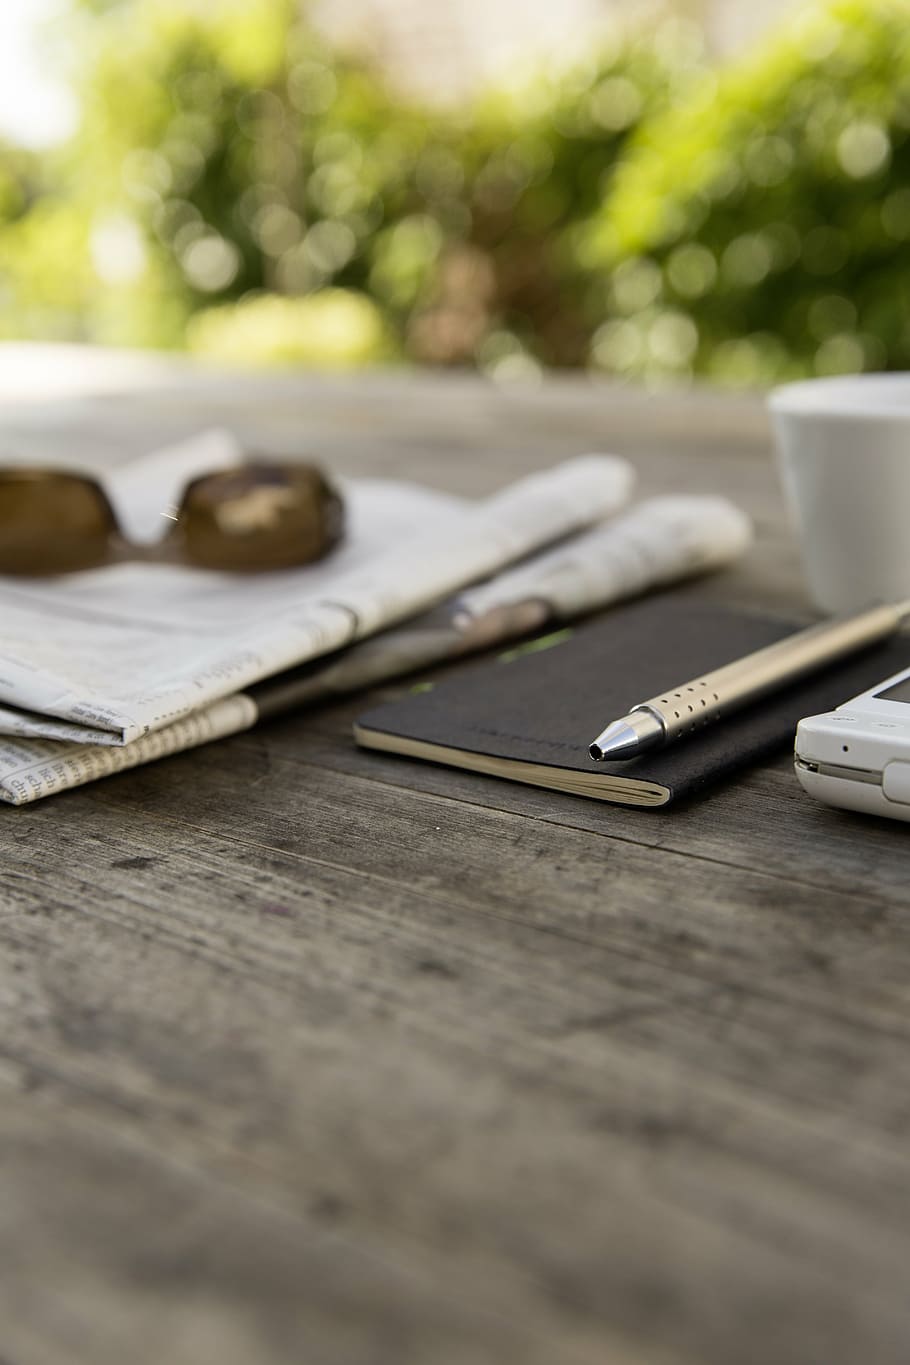 gray pen, smartphone, sunglasses, newspaper, shares, course, chart, notebook, pen, garden